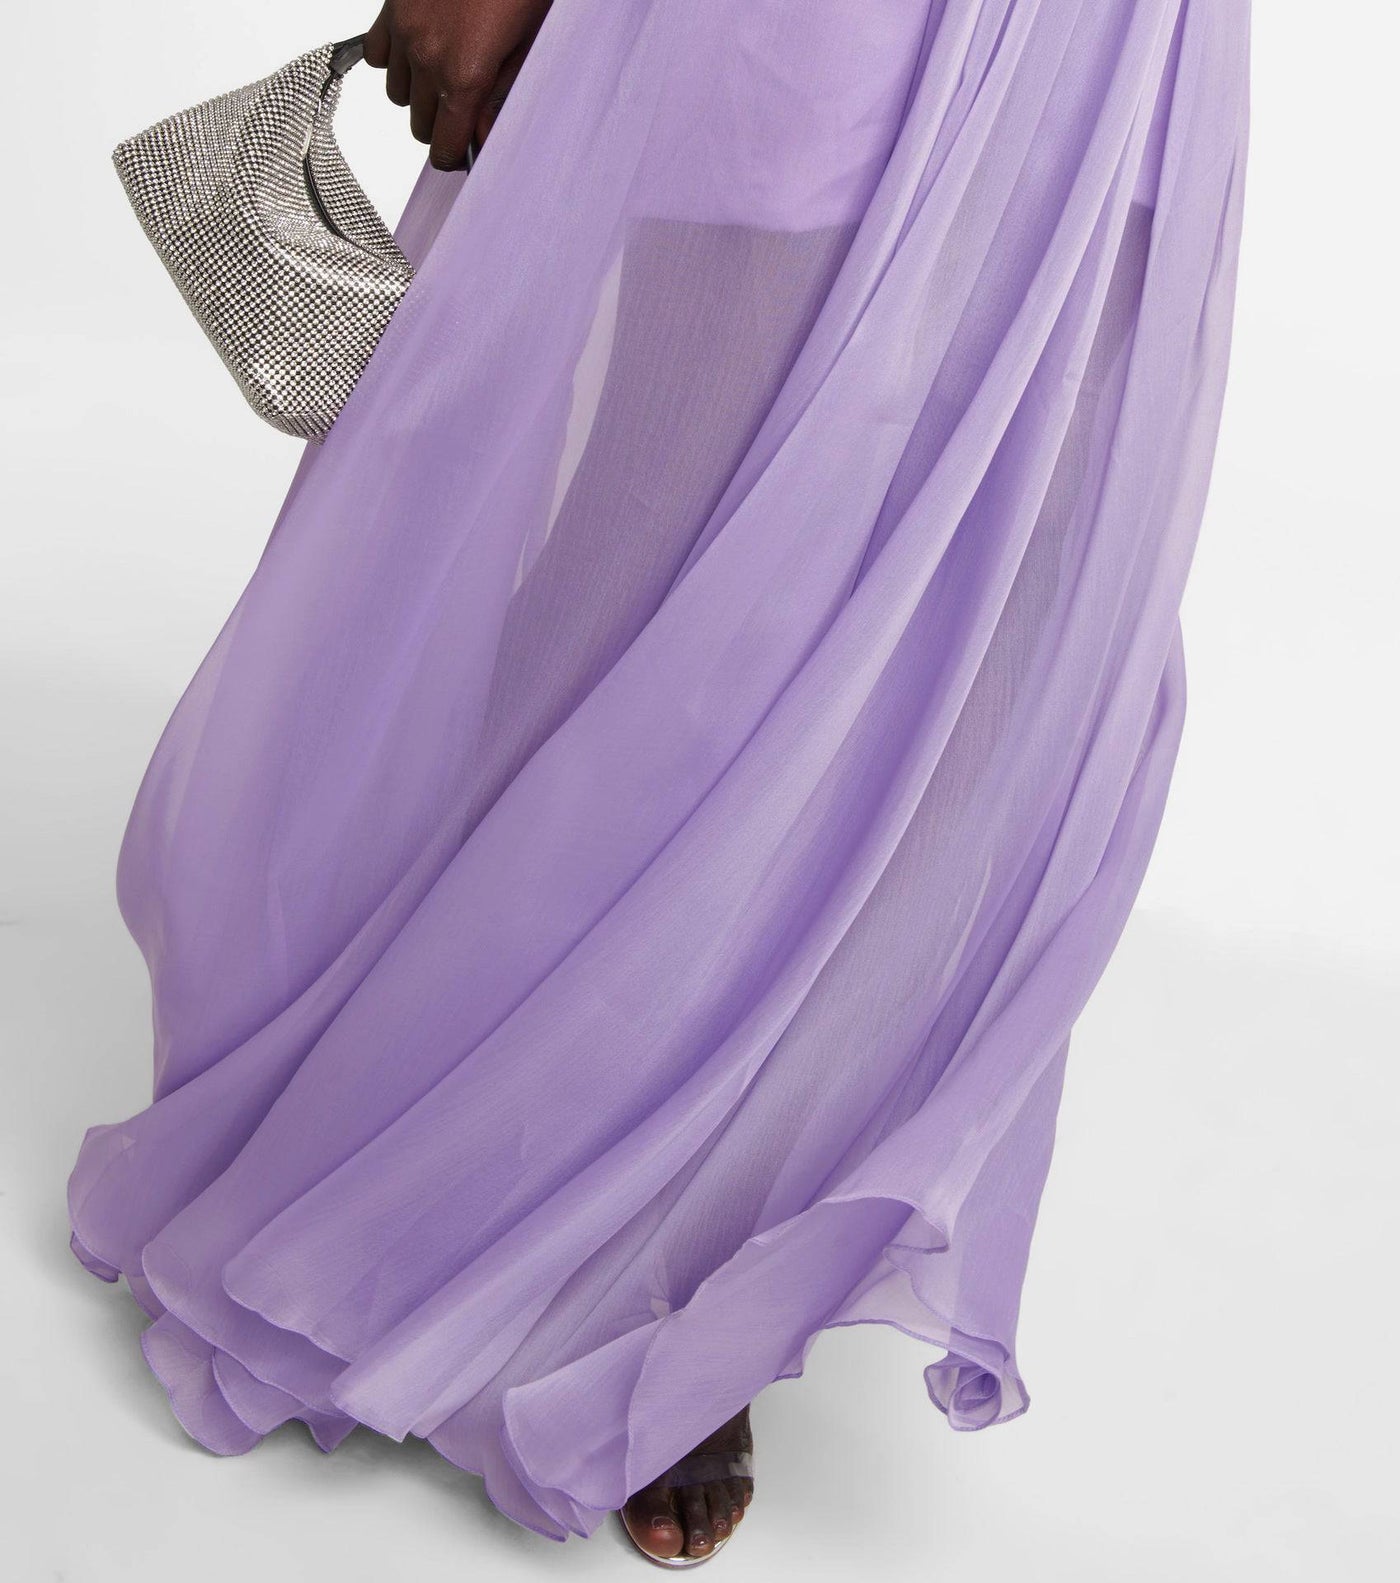 Phoebe Draped Chiffon Maxi Dress - Hot fashionista